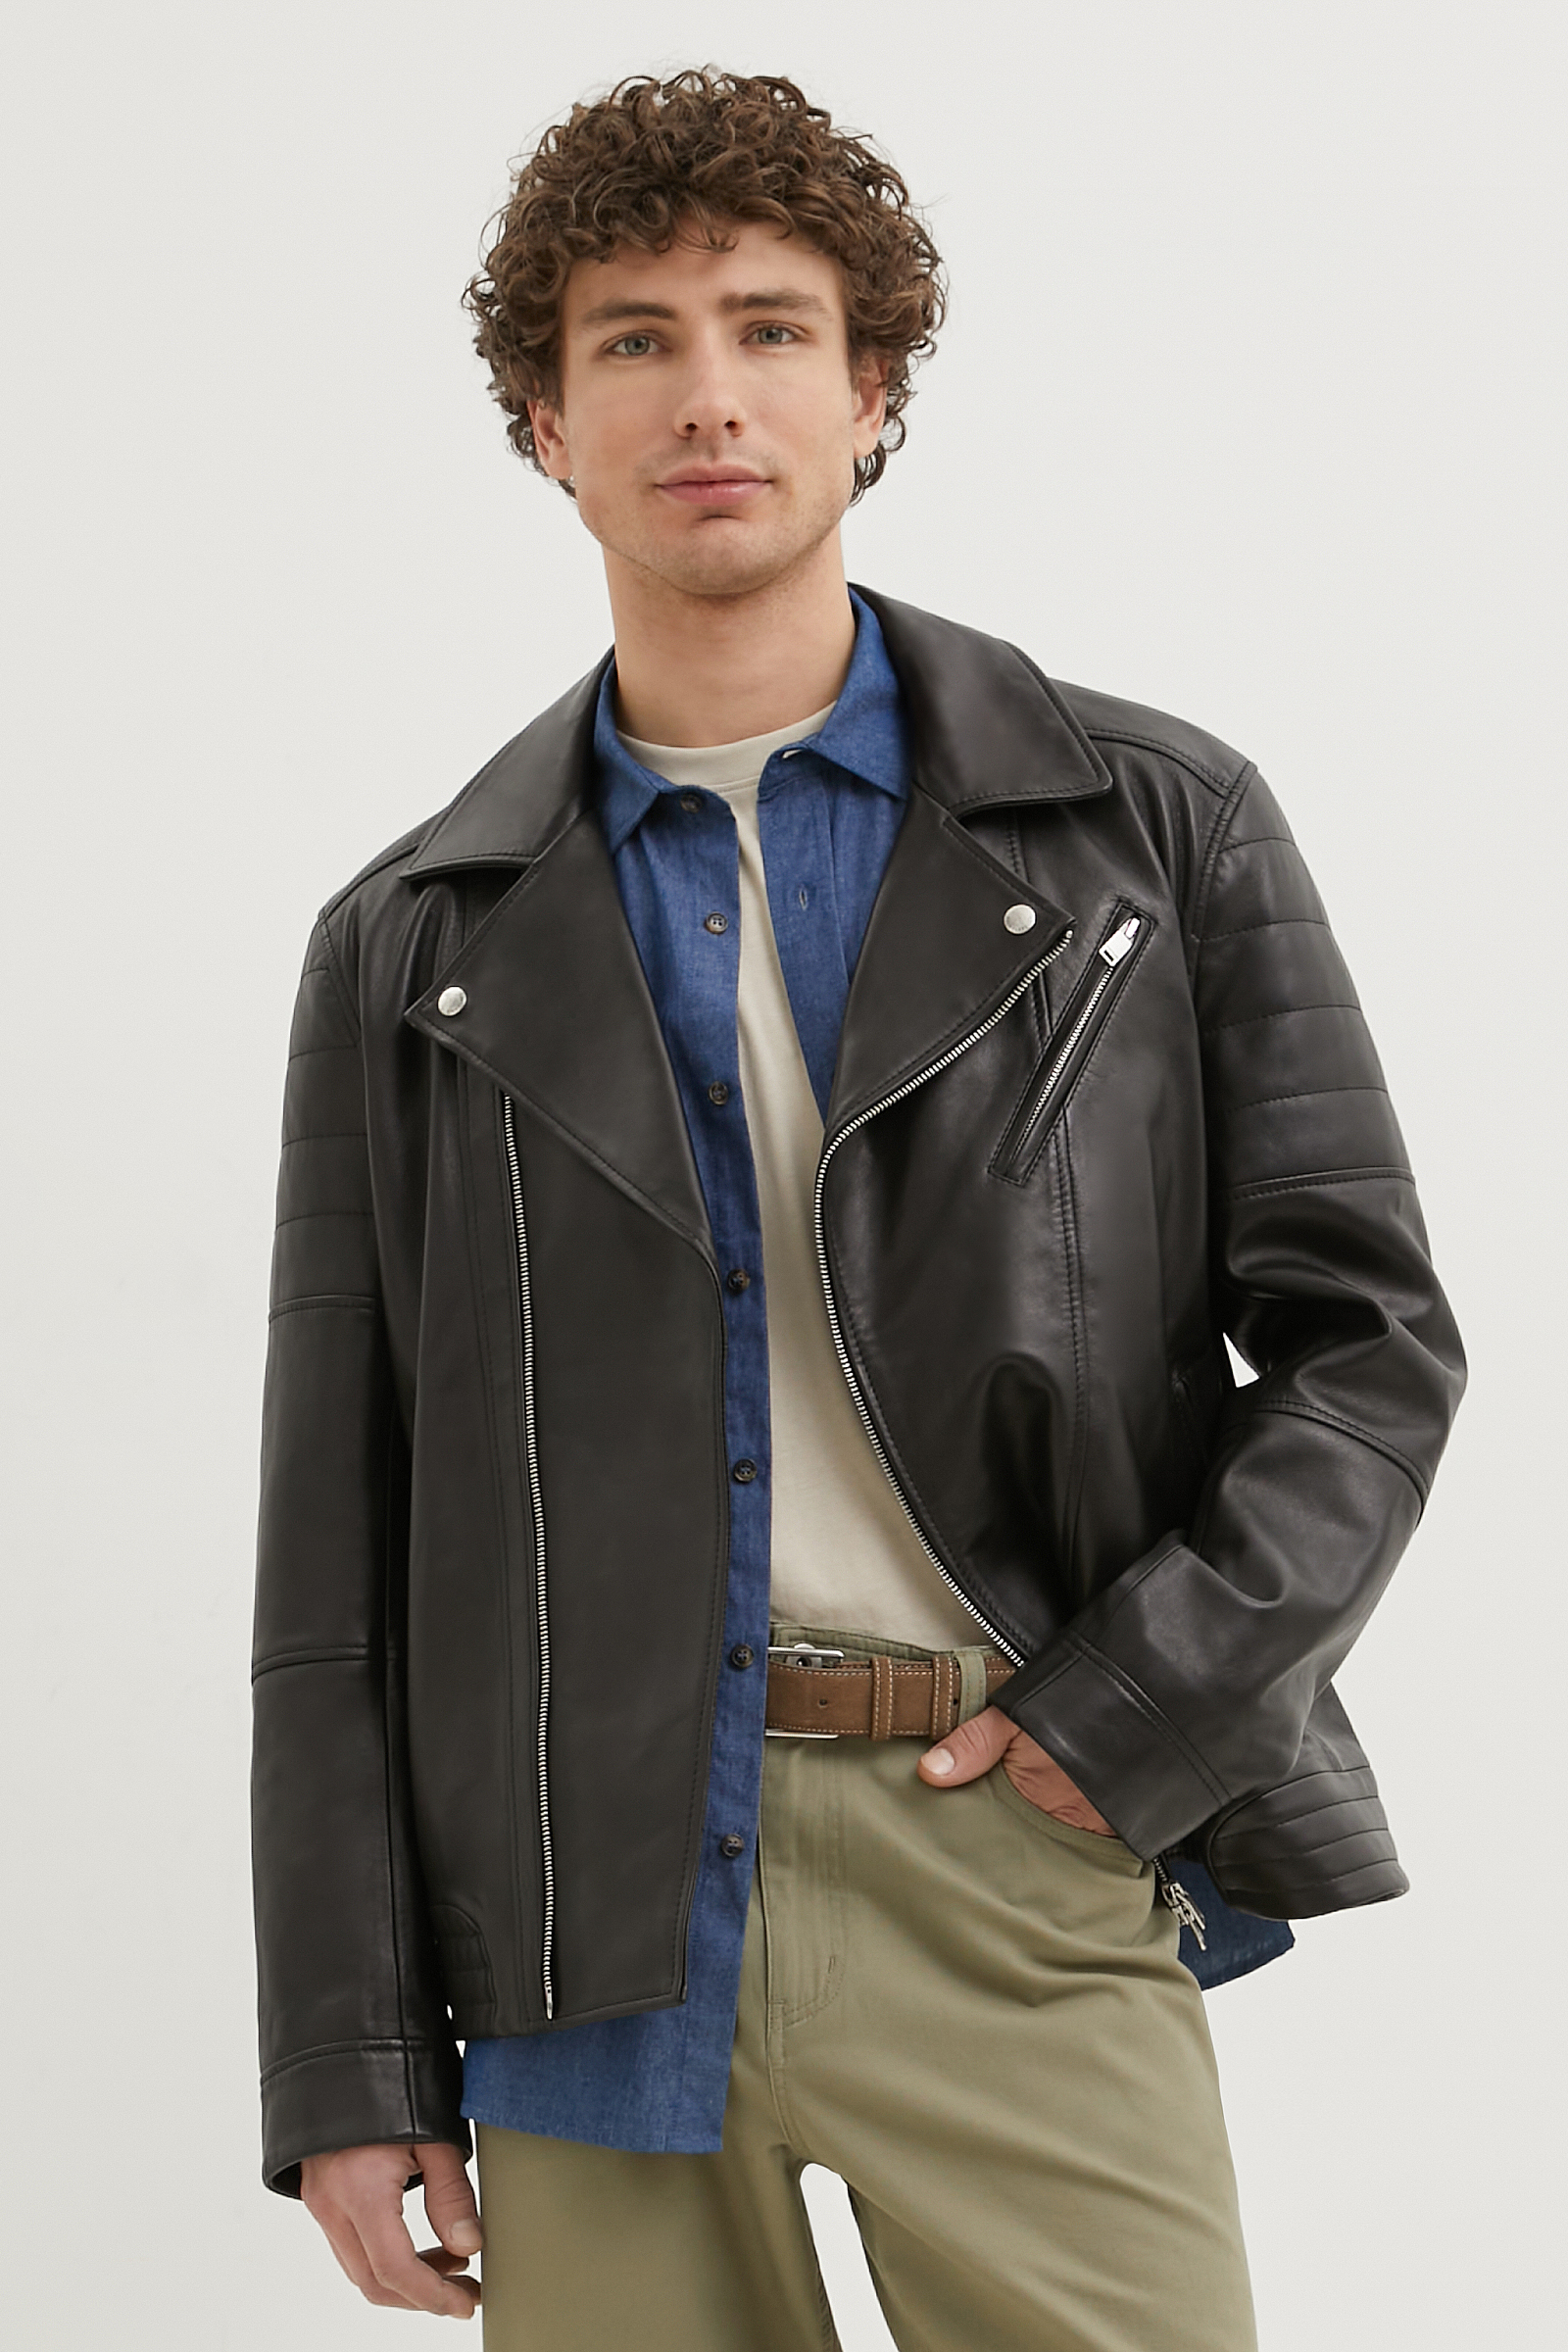 Кожаная куртка мужская Finn Flare FBE21801 черная L